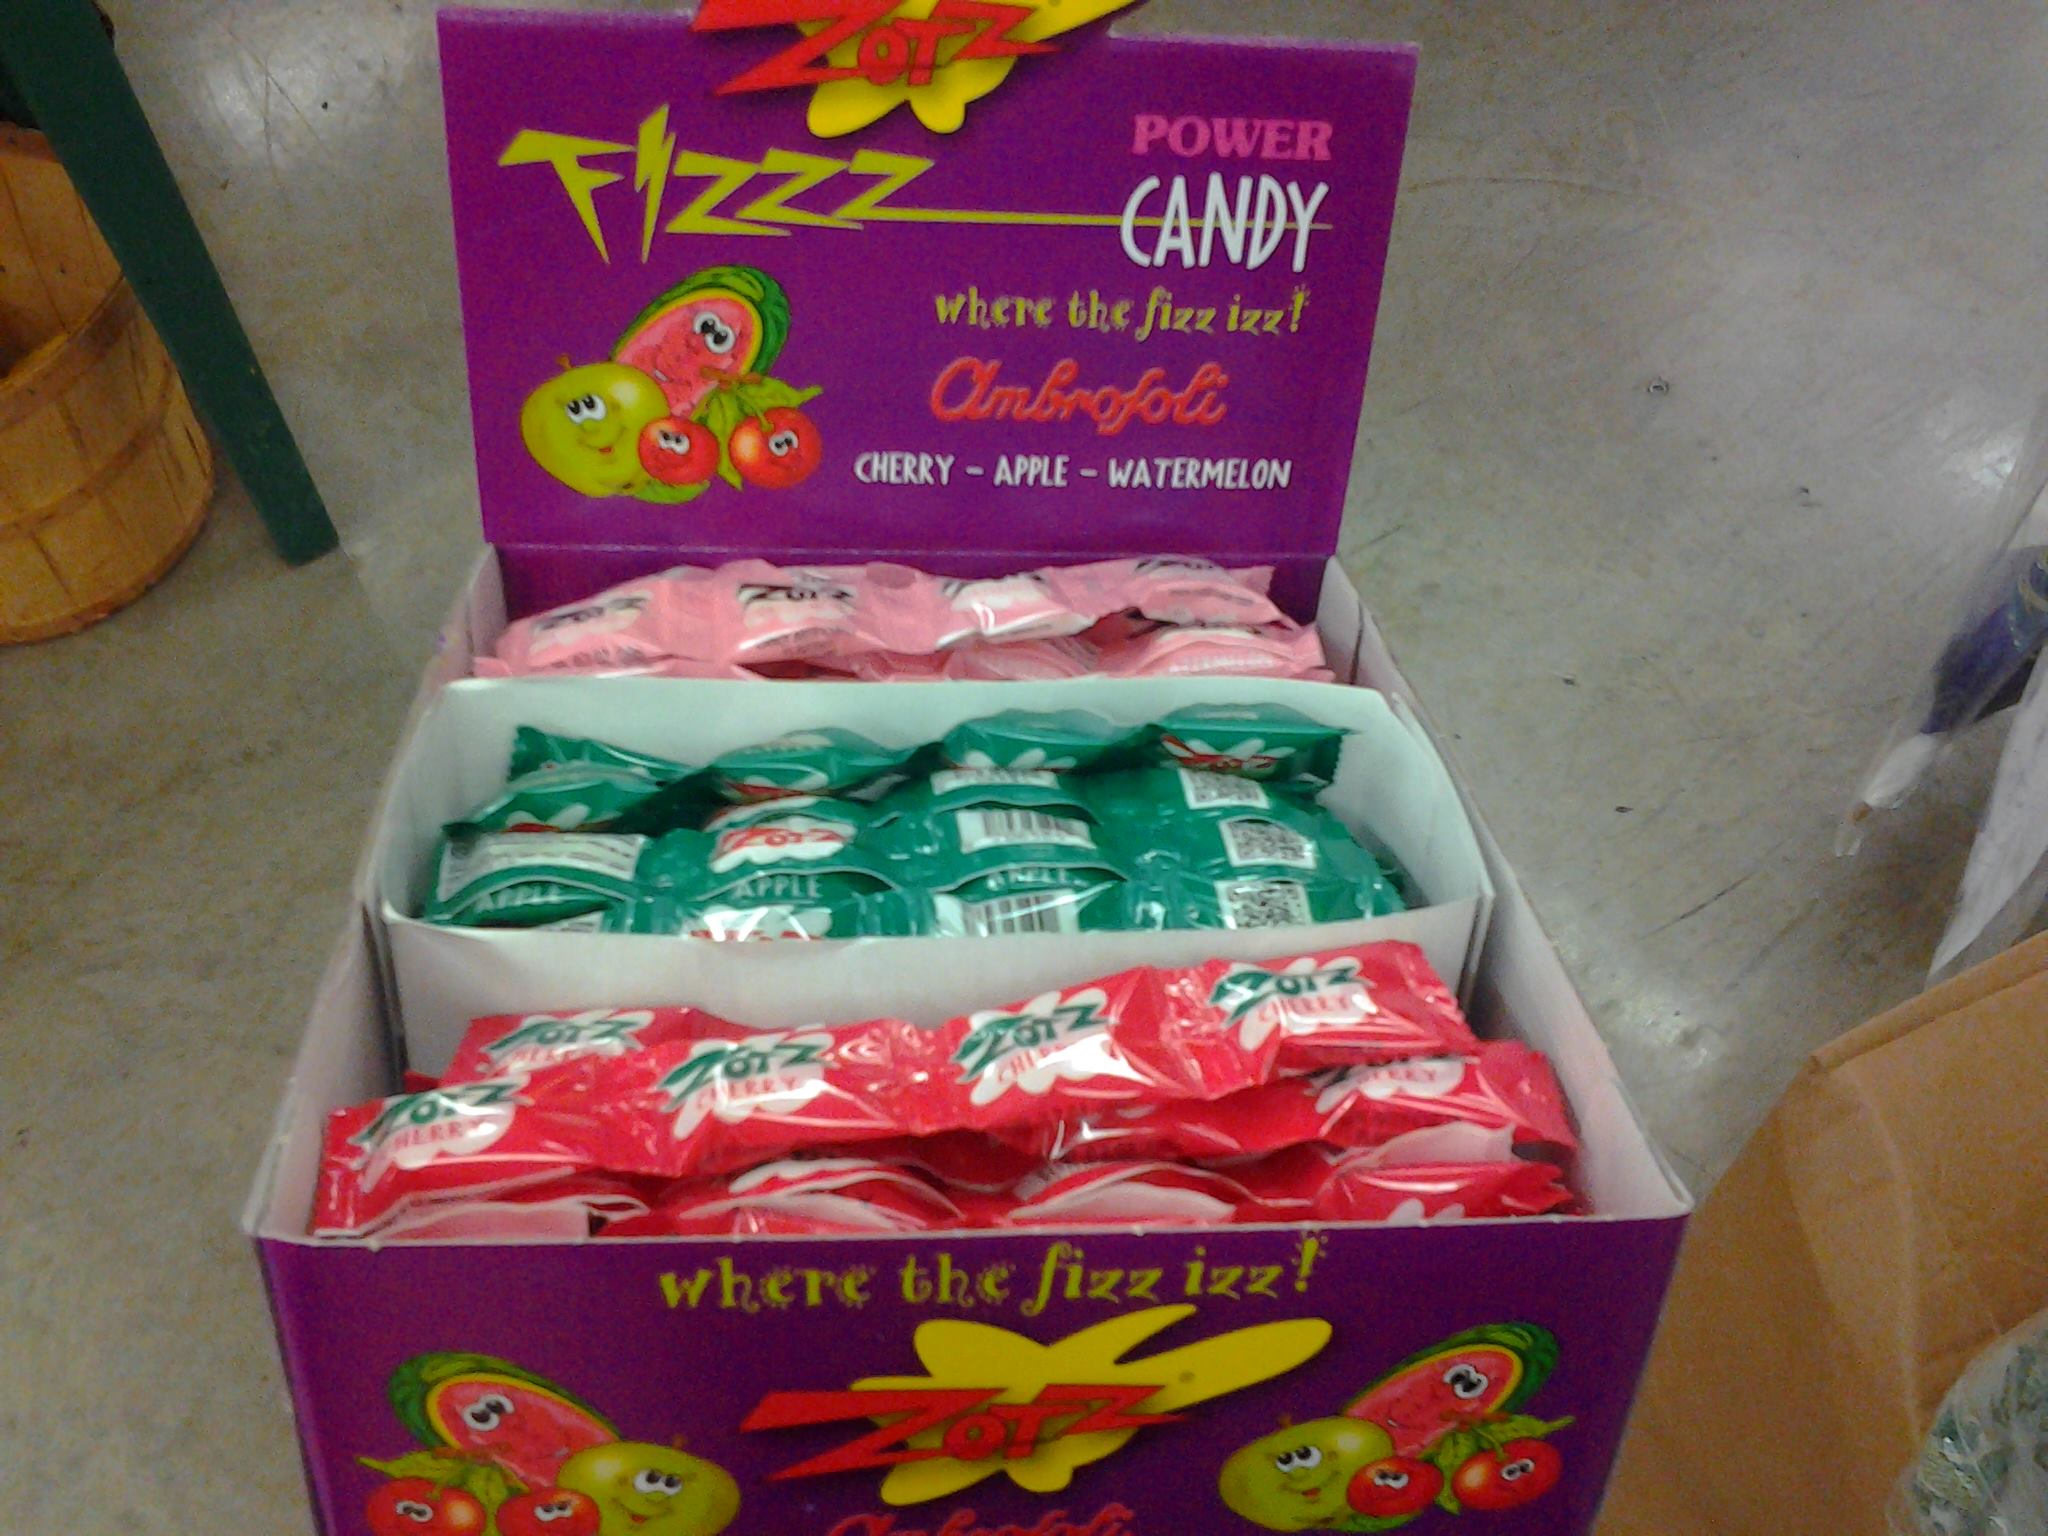 plastic - Power Candy where the fizz izz! Ombrofoli Cherry Apple Watermelon where the fizz izz!